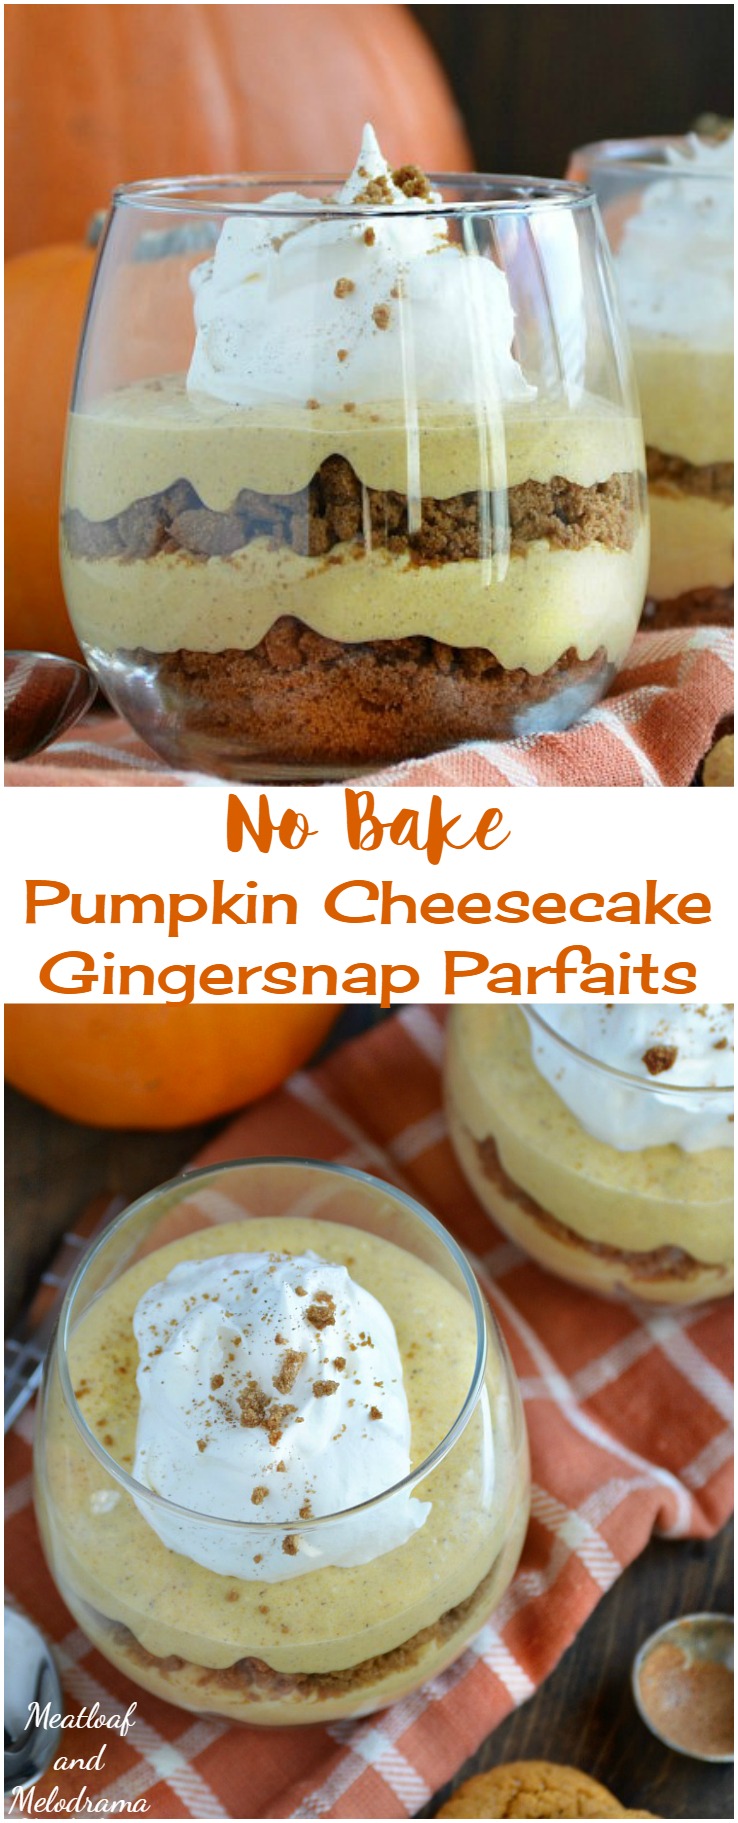 No Bake Pumpkin Cheesecake Gingersnap Parfaits